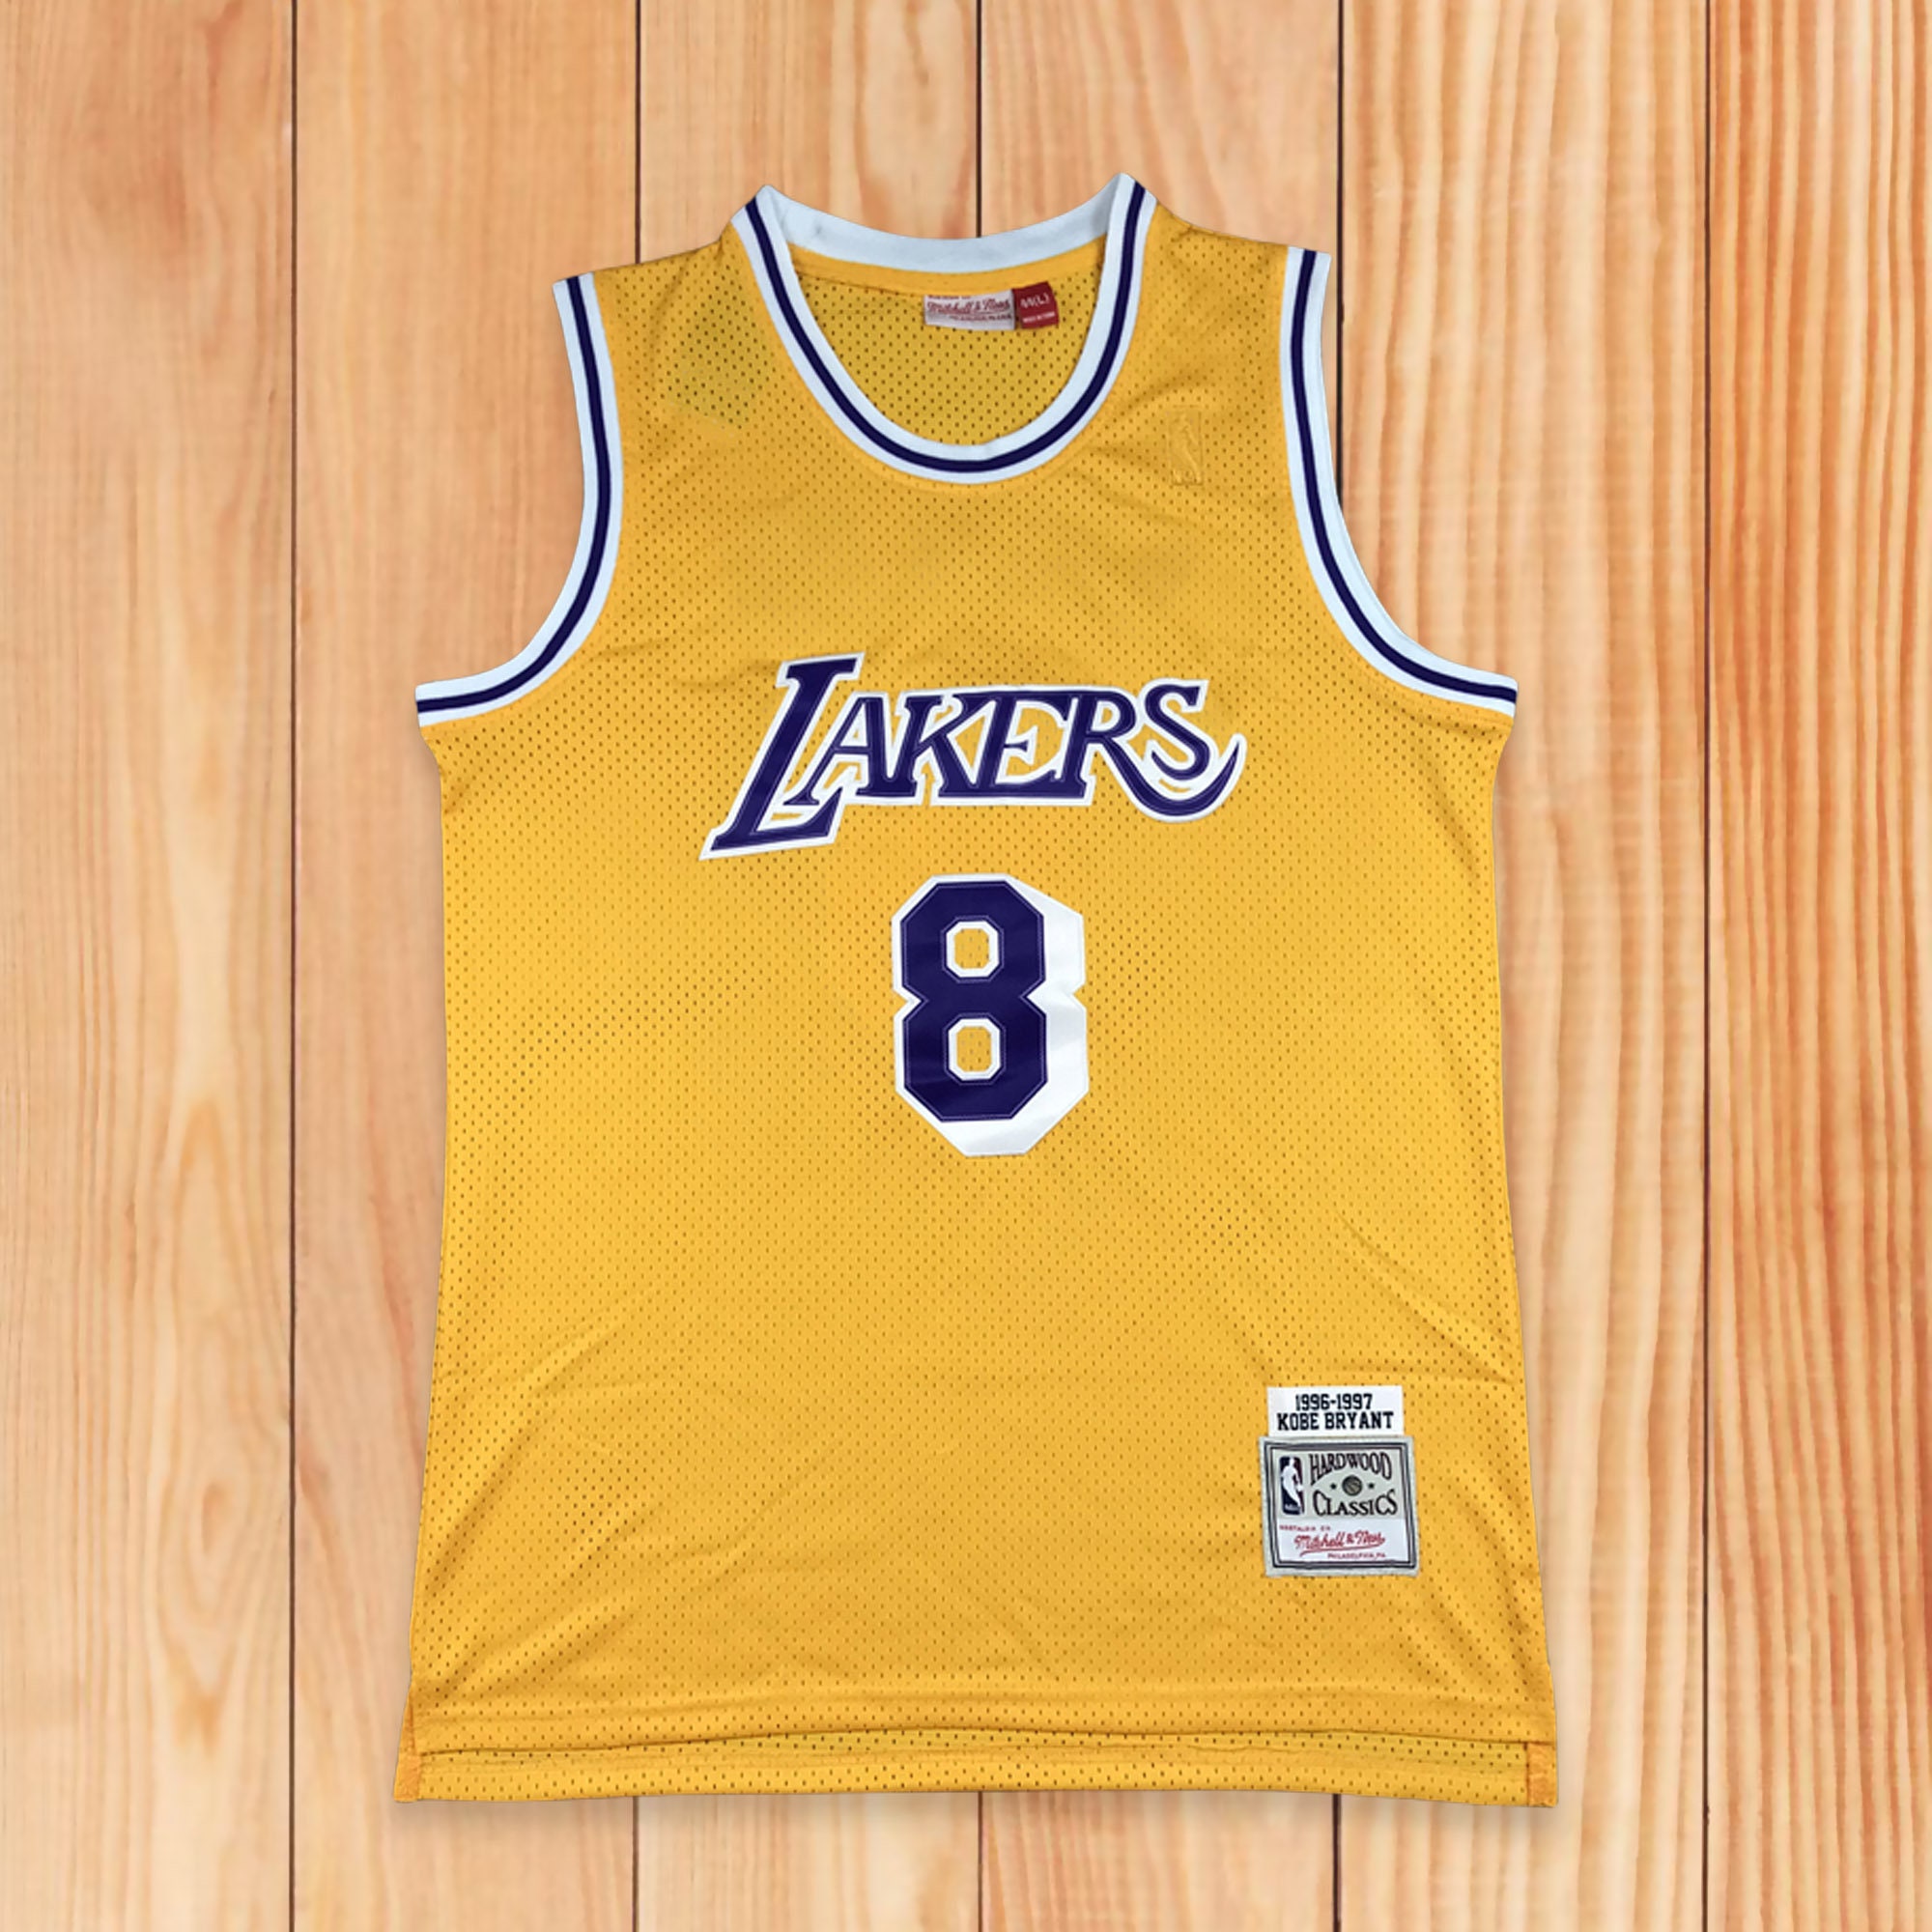 Kobe Bryant #8 NBA Lakers Black Mamba Jersey 1996-97 Xl-XXl Mitchell & Ness  NWT